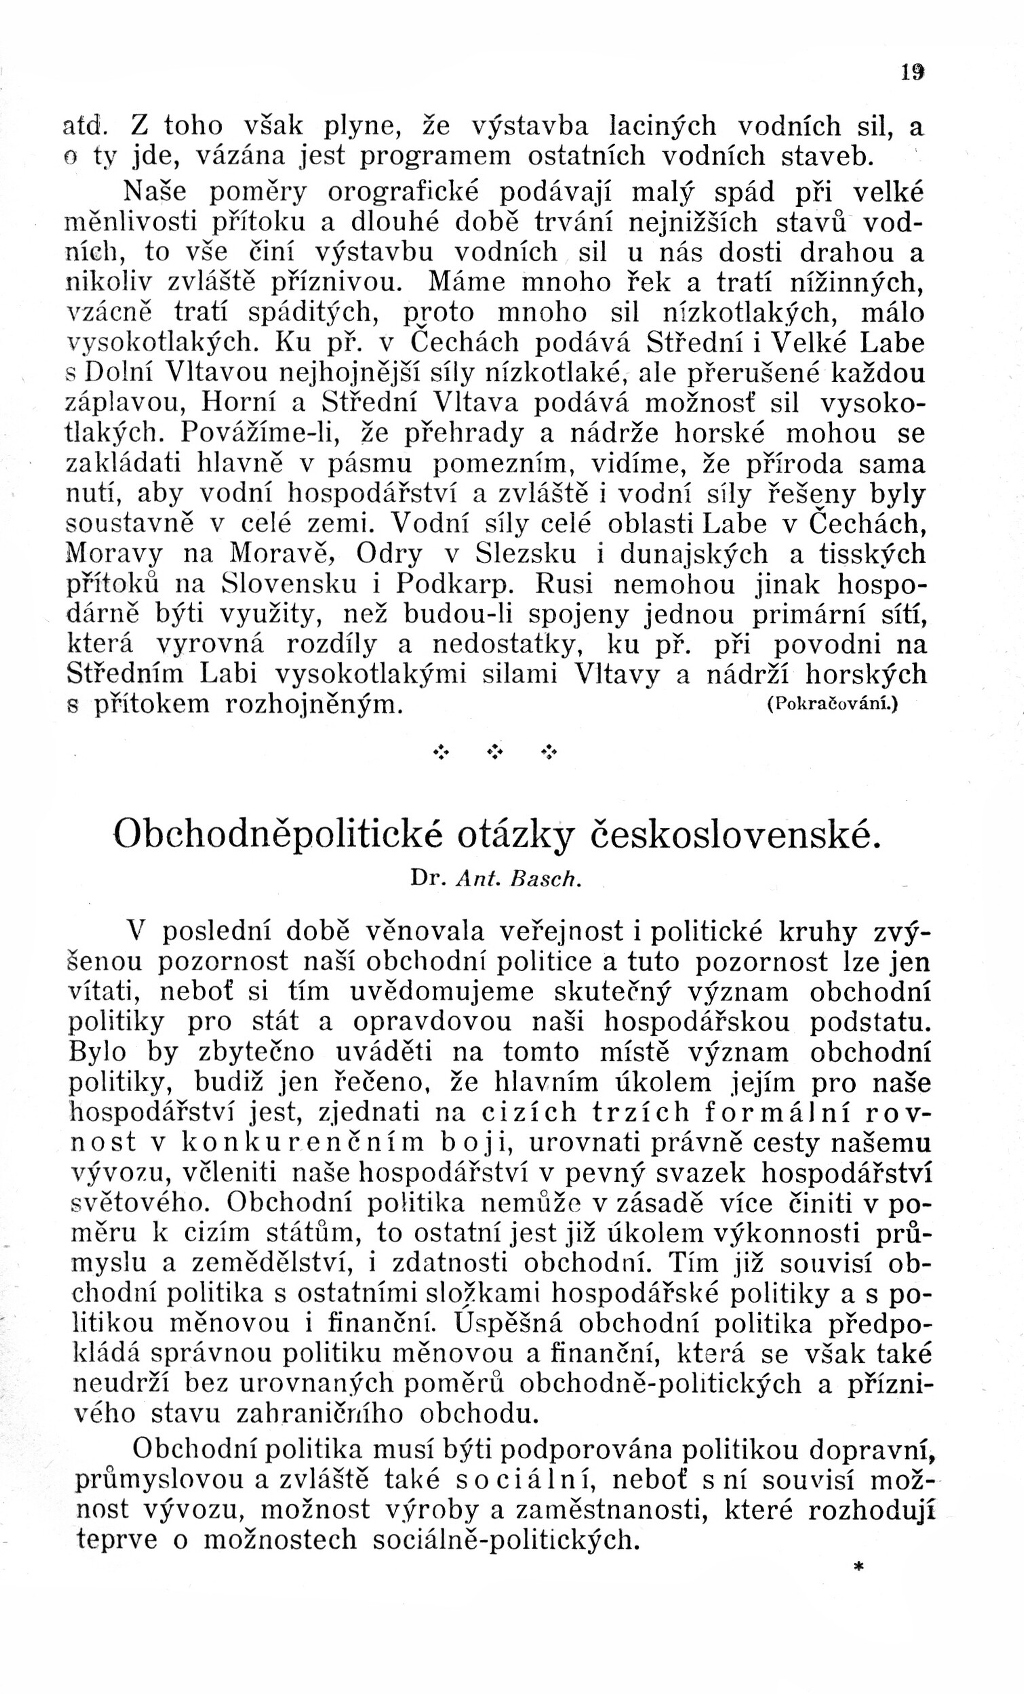 Obchodněpolitické otázky československé